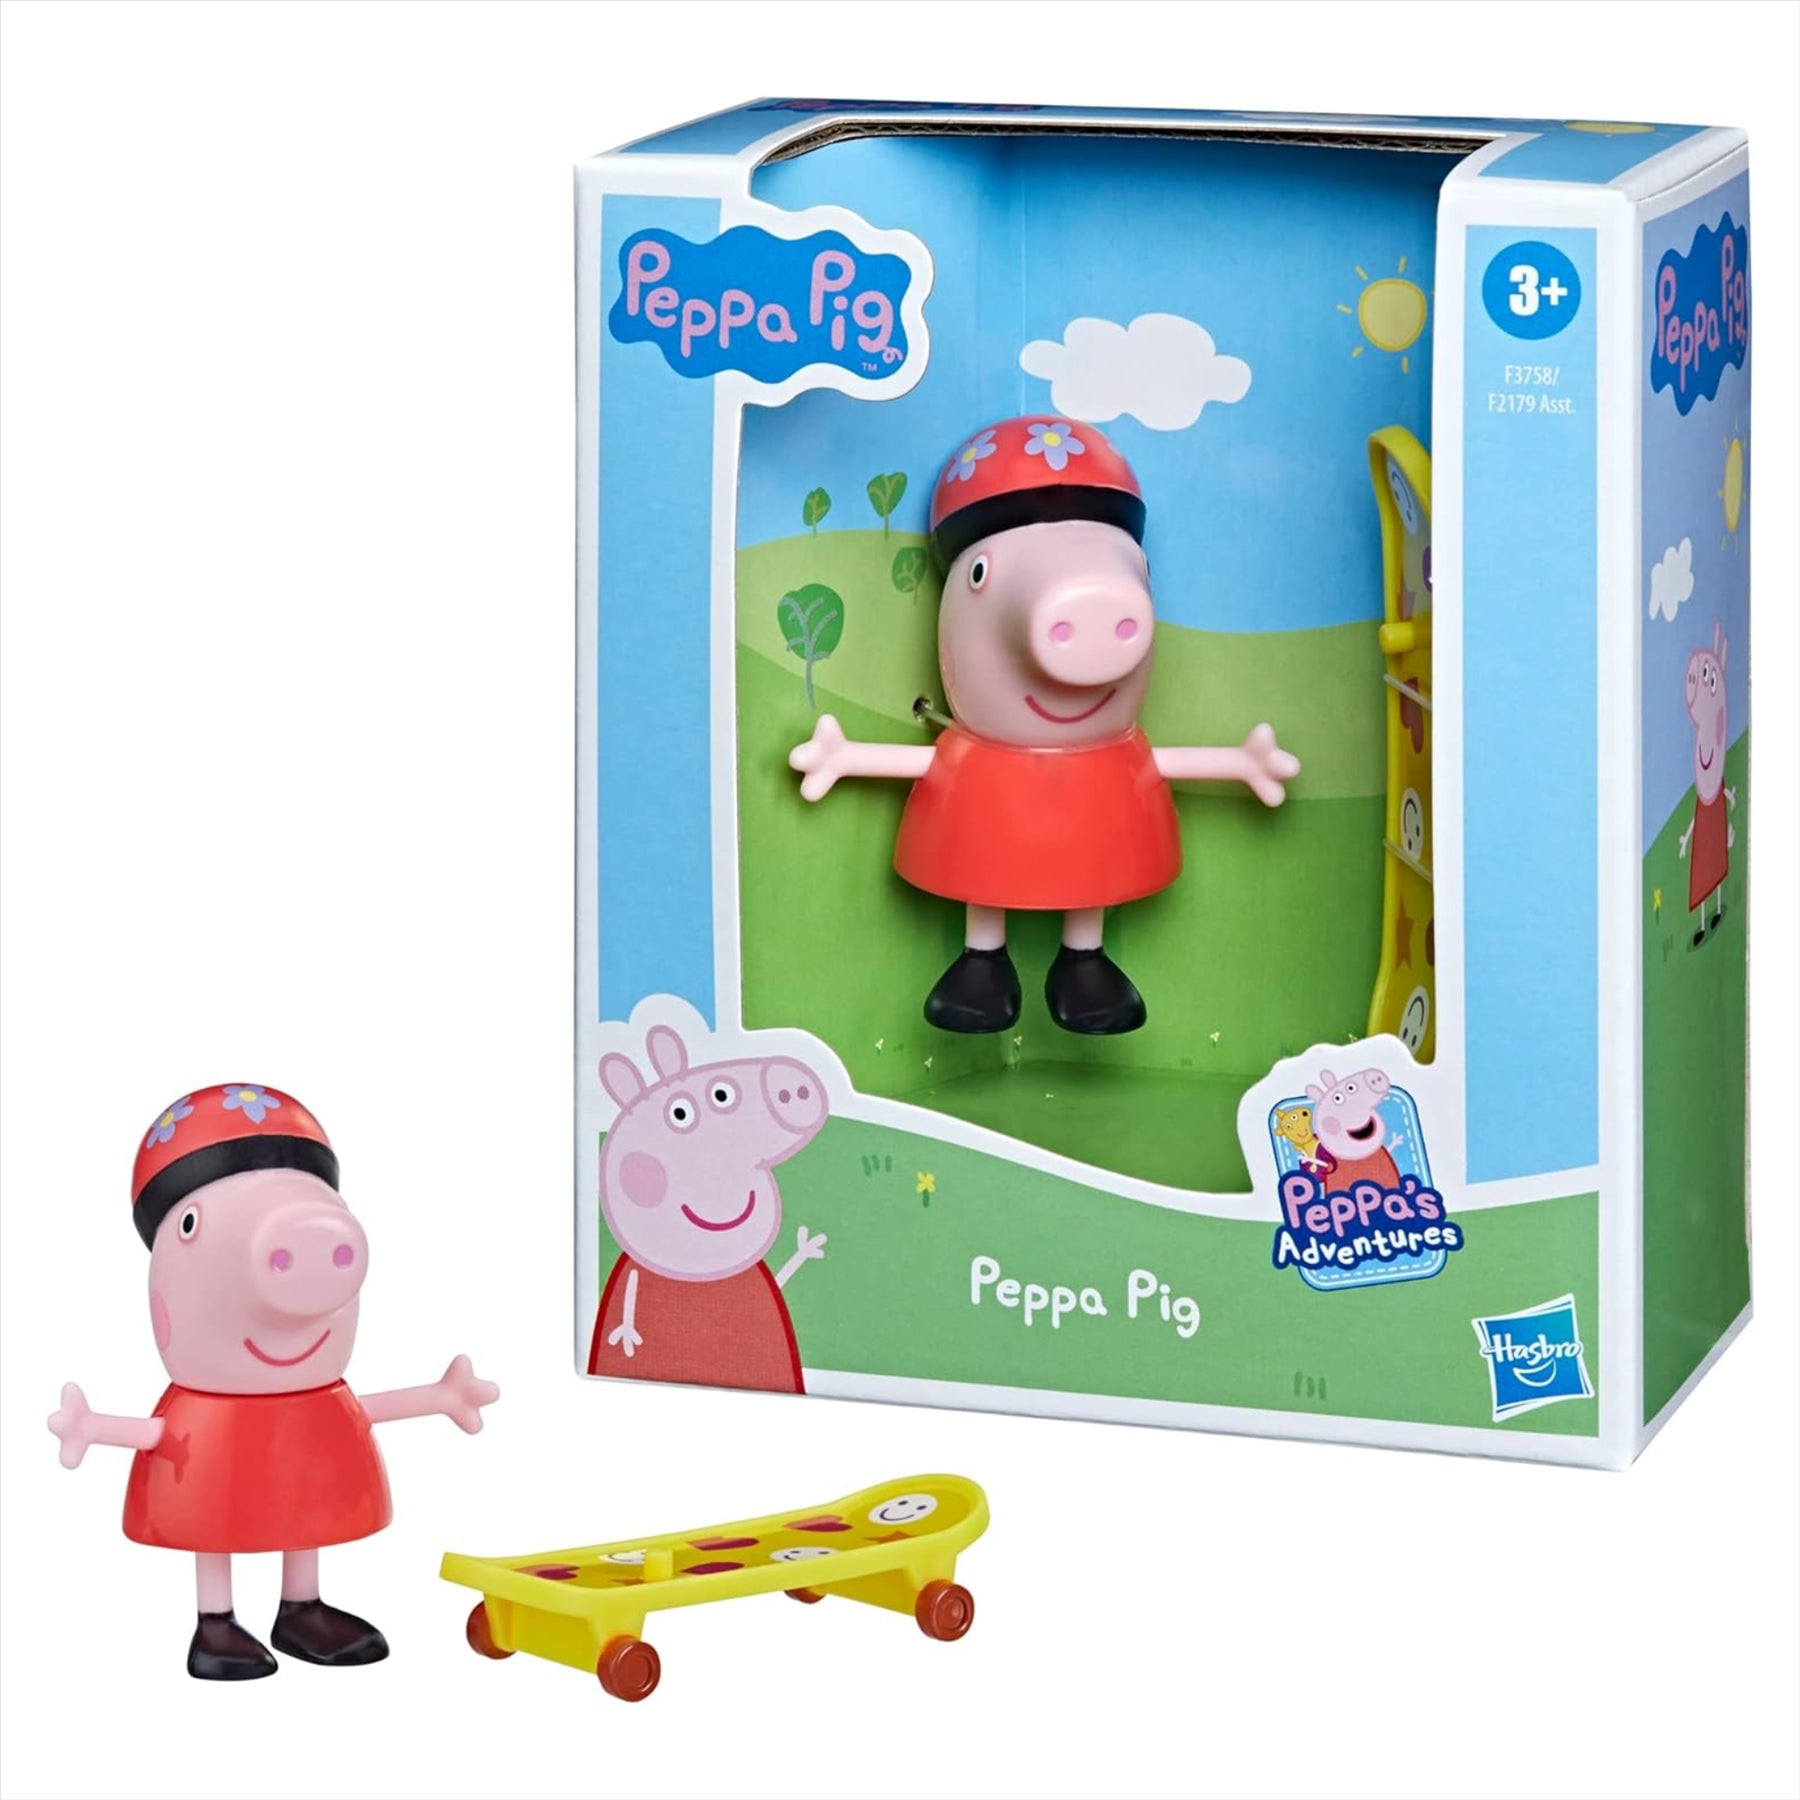 Peppa Pig - Peppa's Adventures Peppa Pig Figure With Skateboard Toy - Toptoys2u